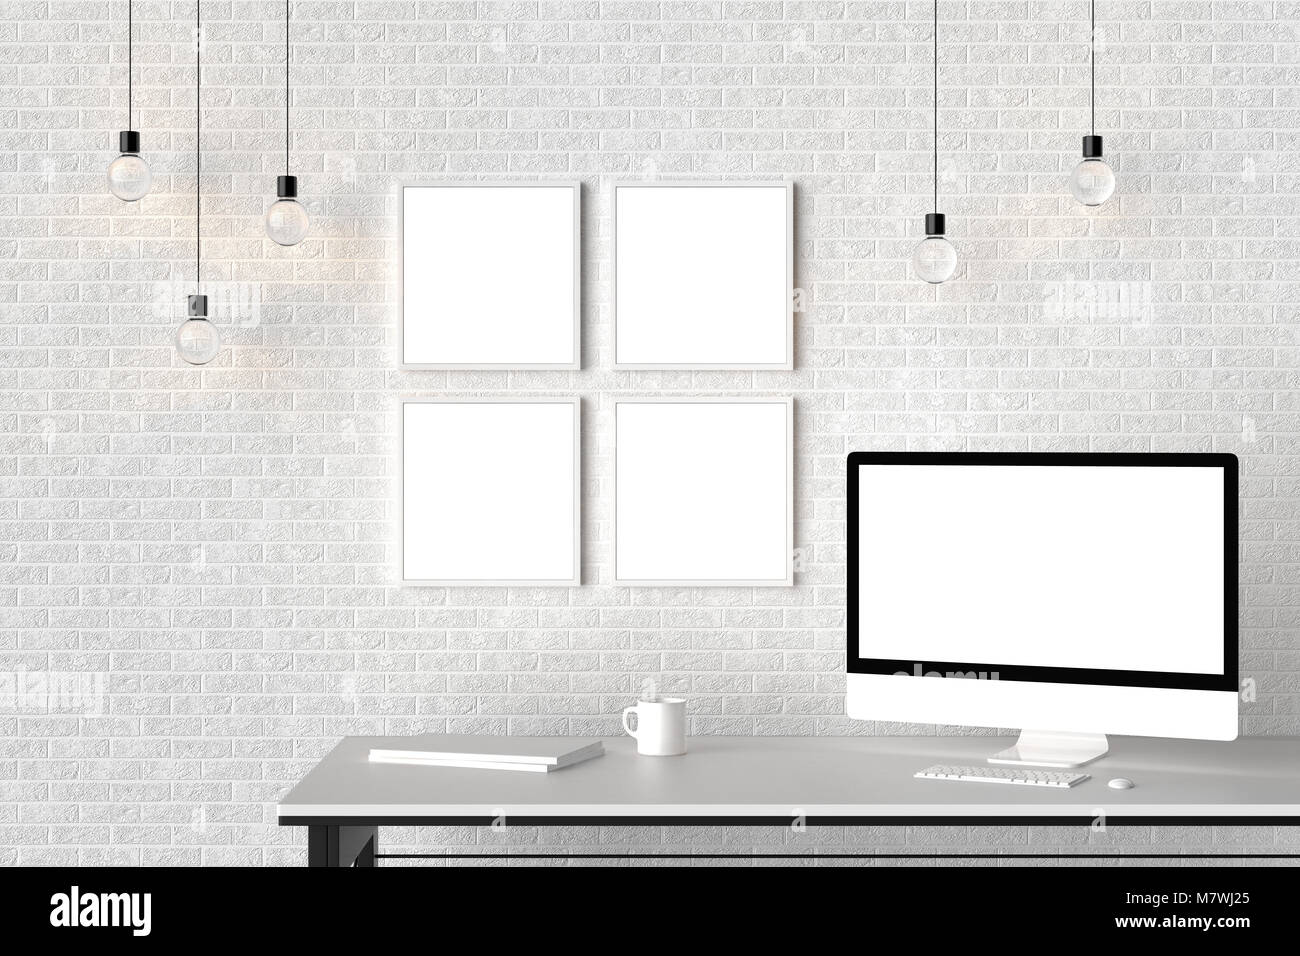 Area di lavoro moderno isolato con cornici vuote su un muro di mattoni e isolato sullo schermo del computer. 3D illustra Foto Stock